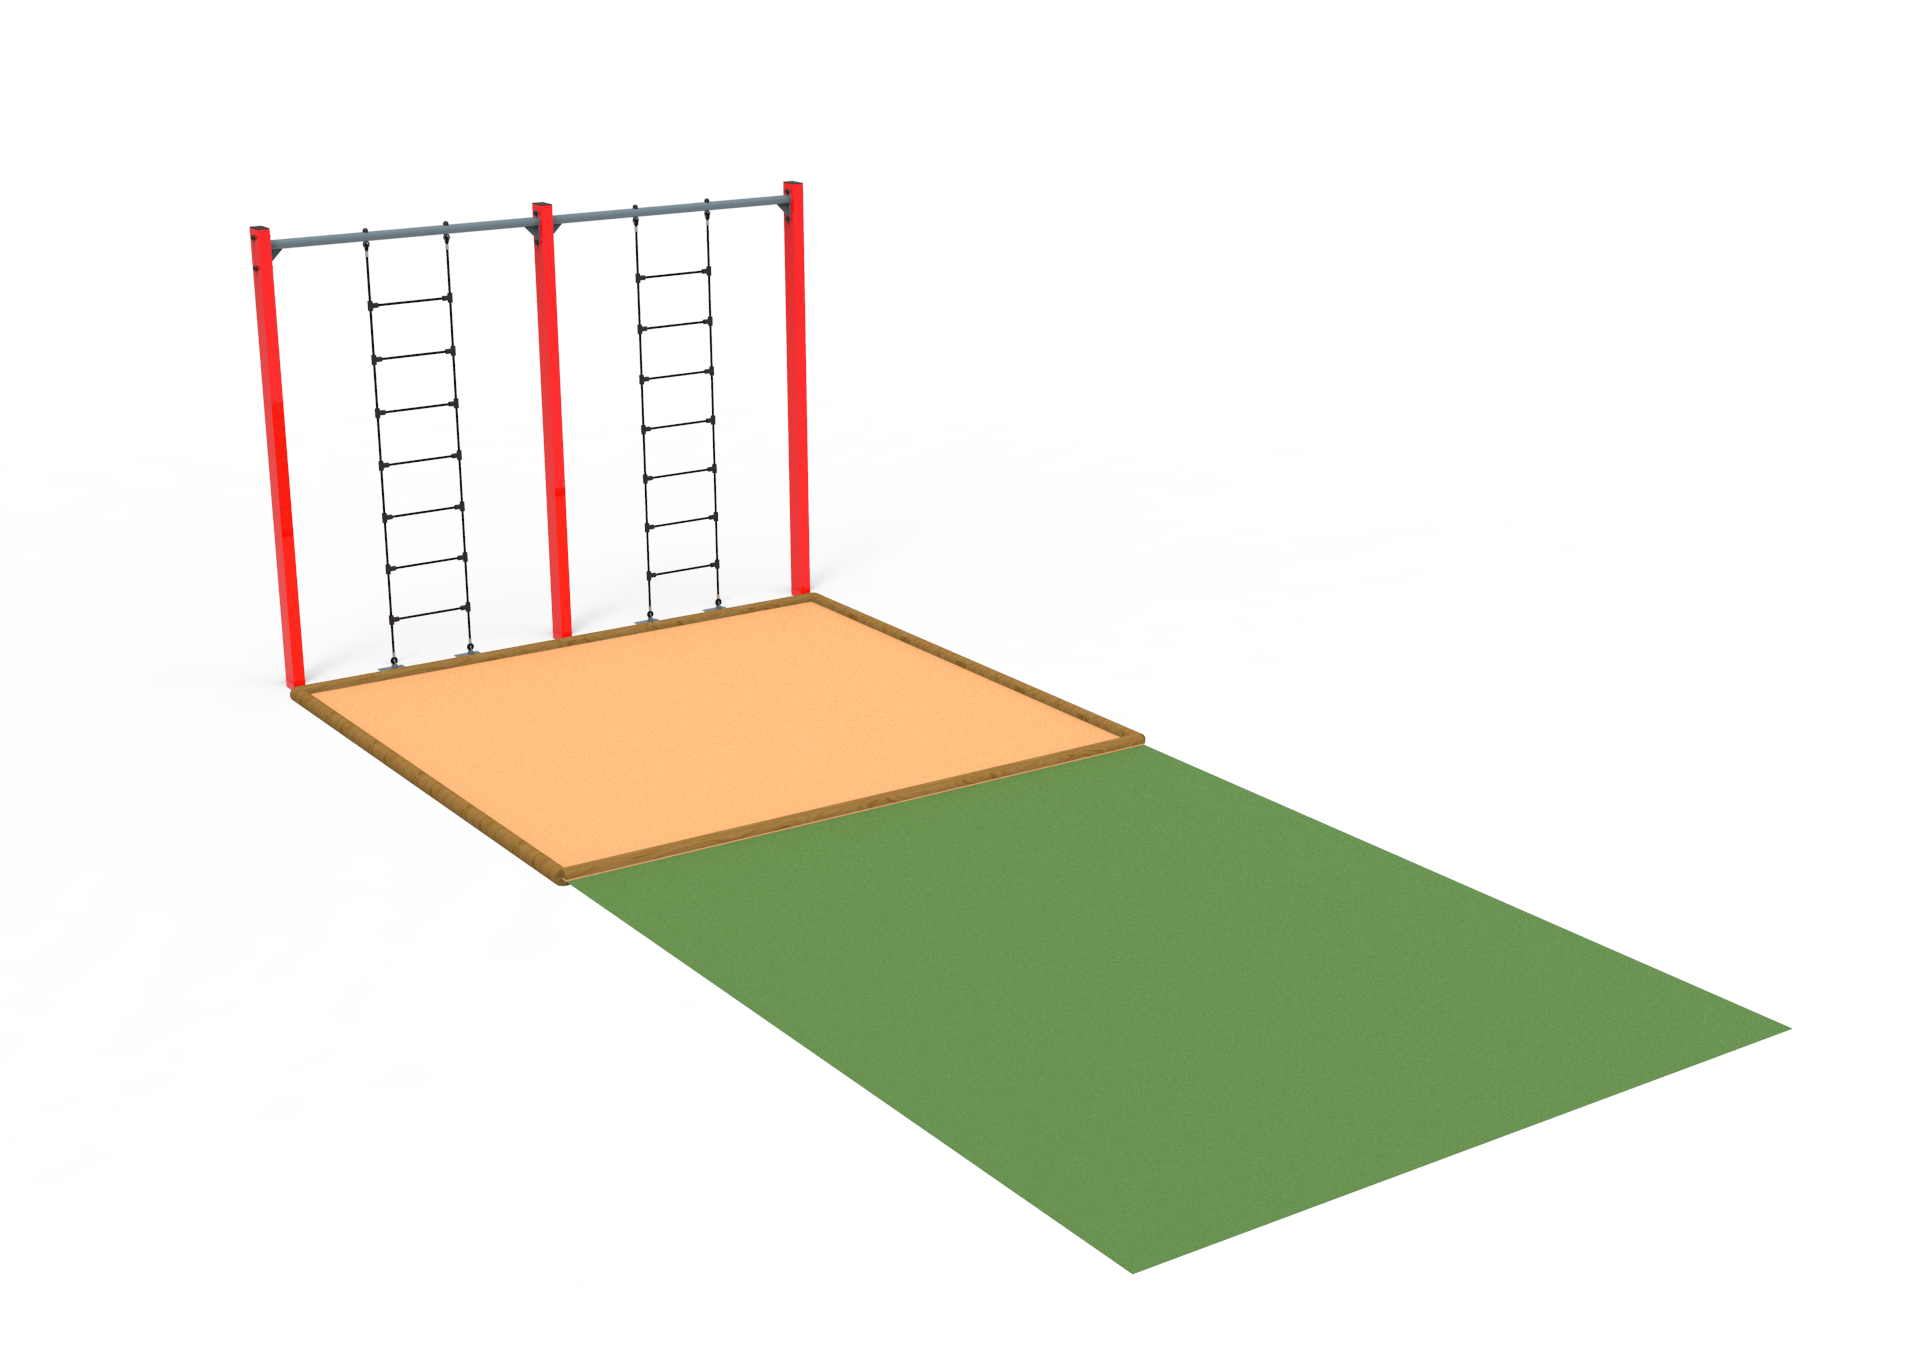 Escala de cuerda! Descubre nuestra línea de Pista Americana de Kiwi Playgrounds - Sports Equipment y lleva el entrenamiento a otro nivel.